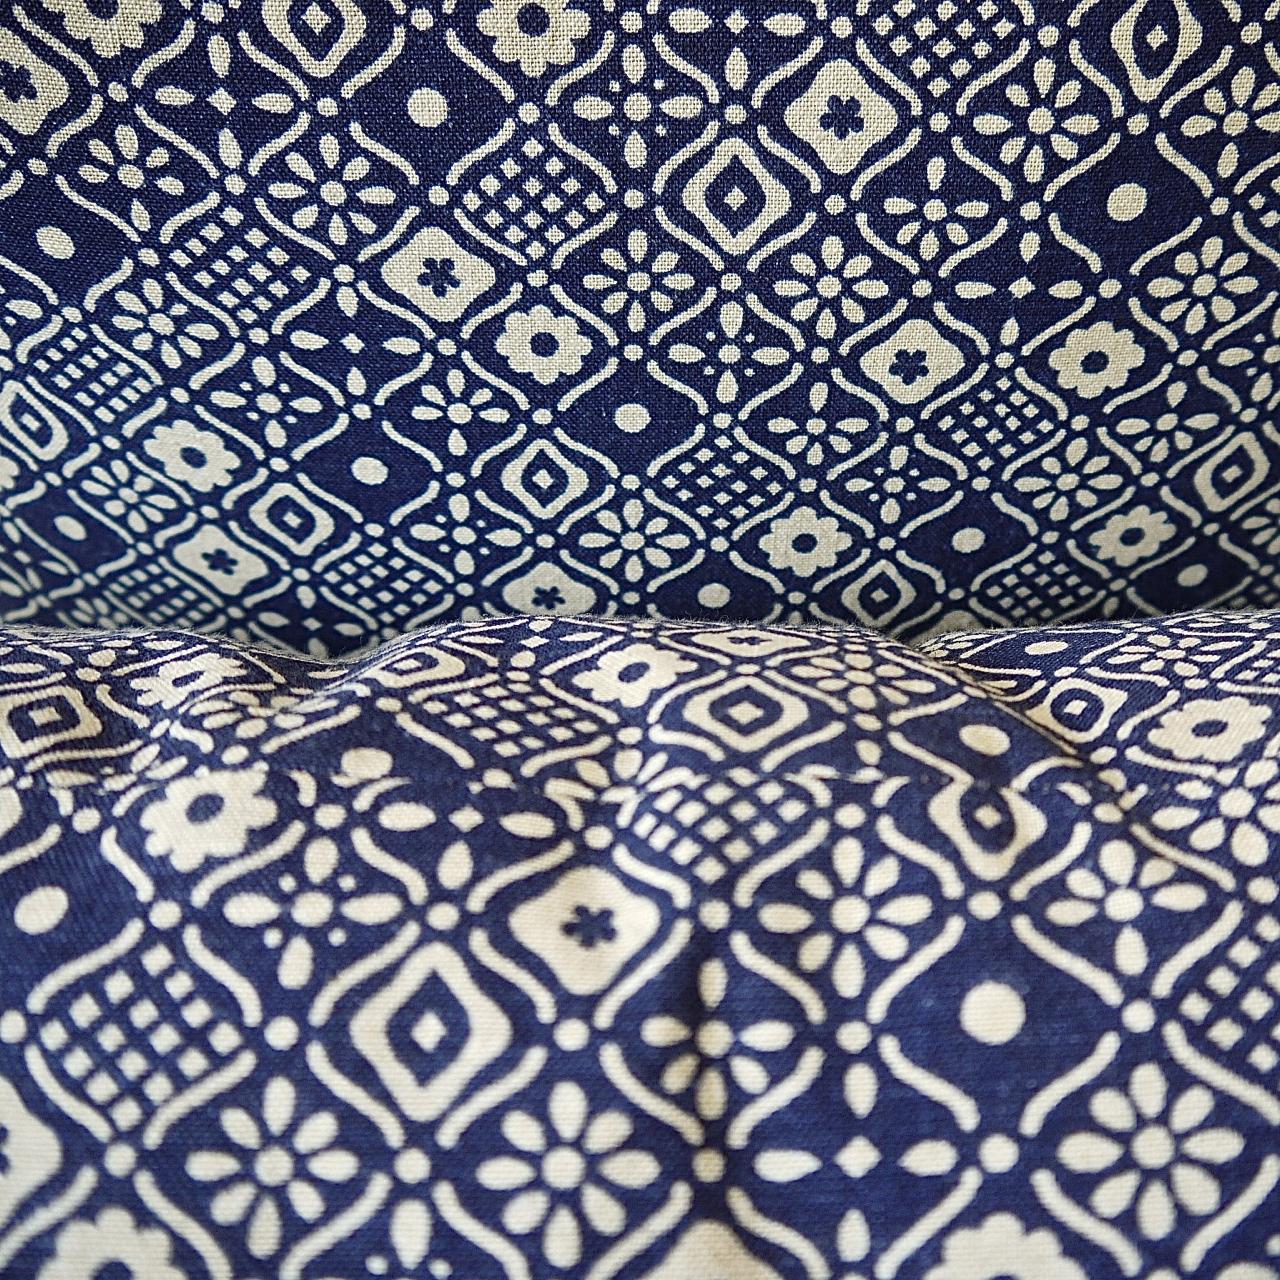 Indigo Blue and White Print Cotton Pillow French, Midcentury 2